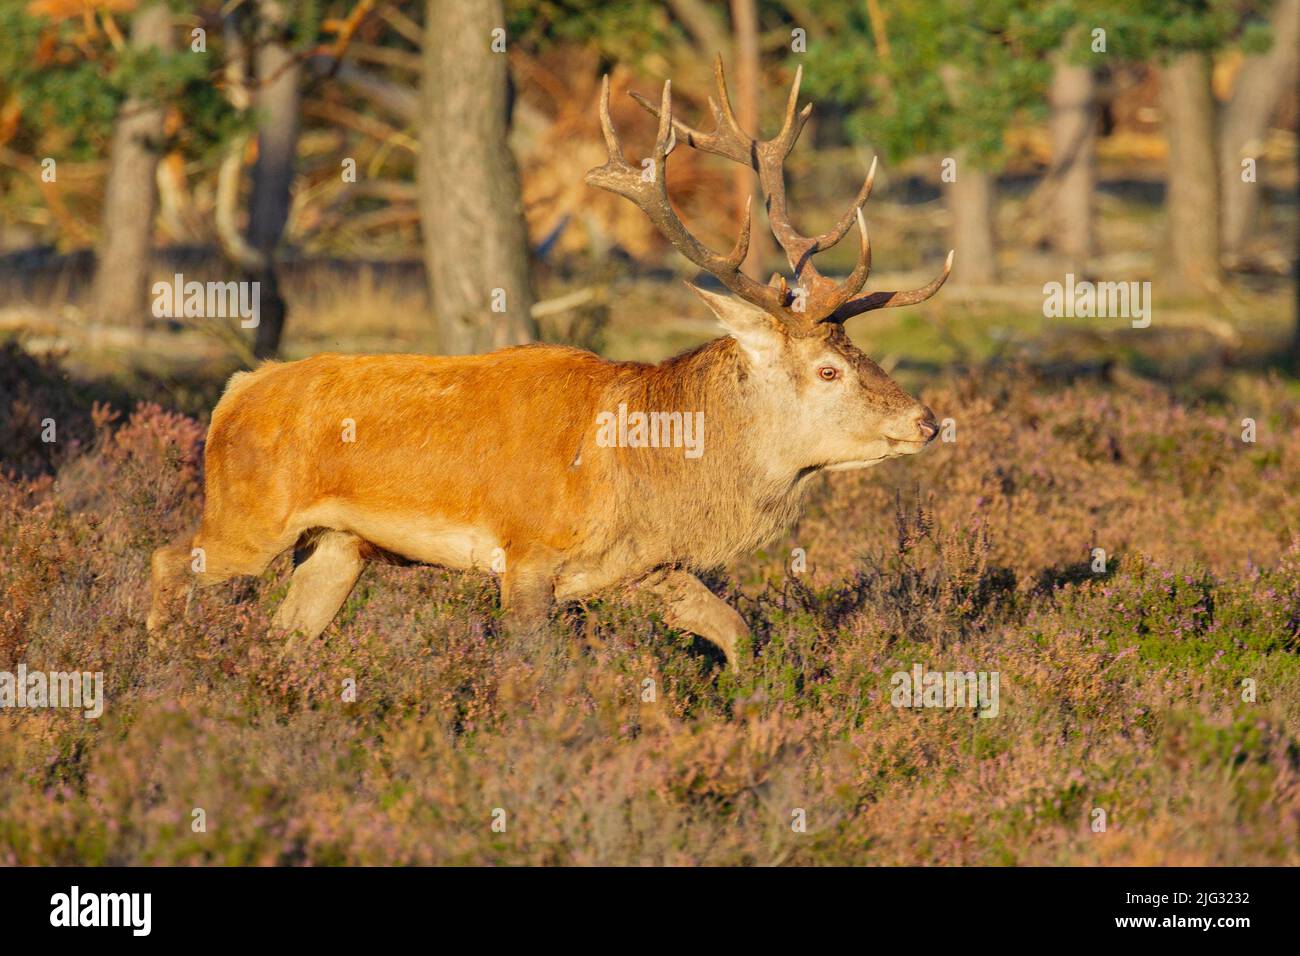 red deer (Cervus elaphus), red deer stag walking in a heathland, side view, Germany Stock Photo